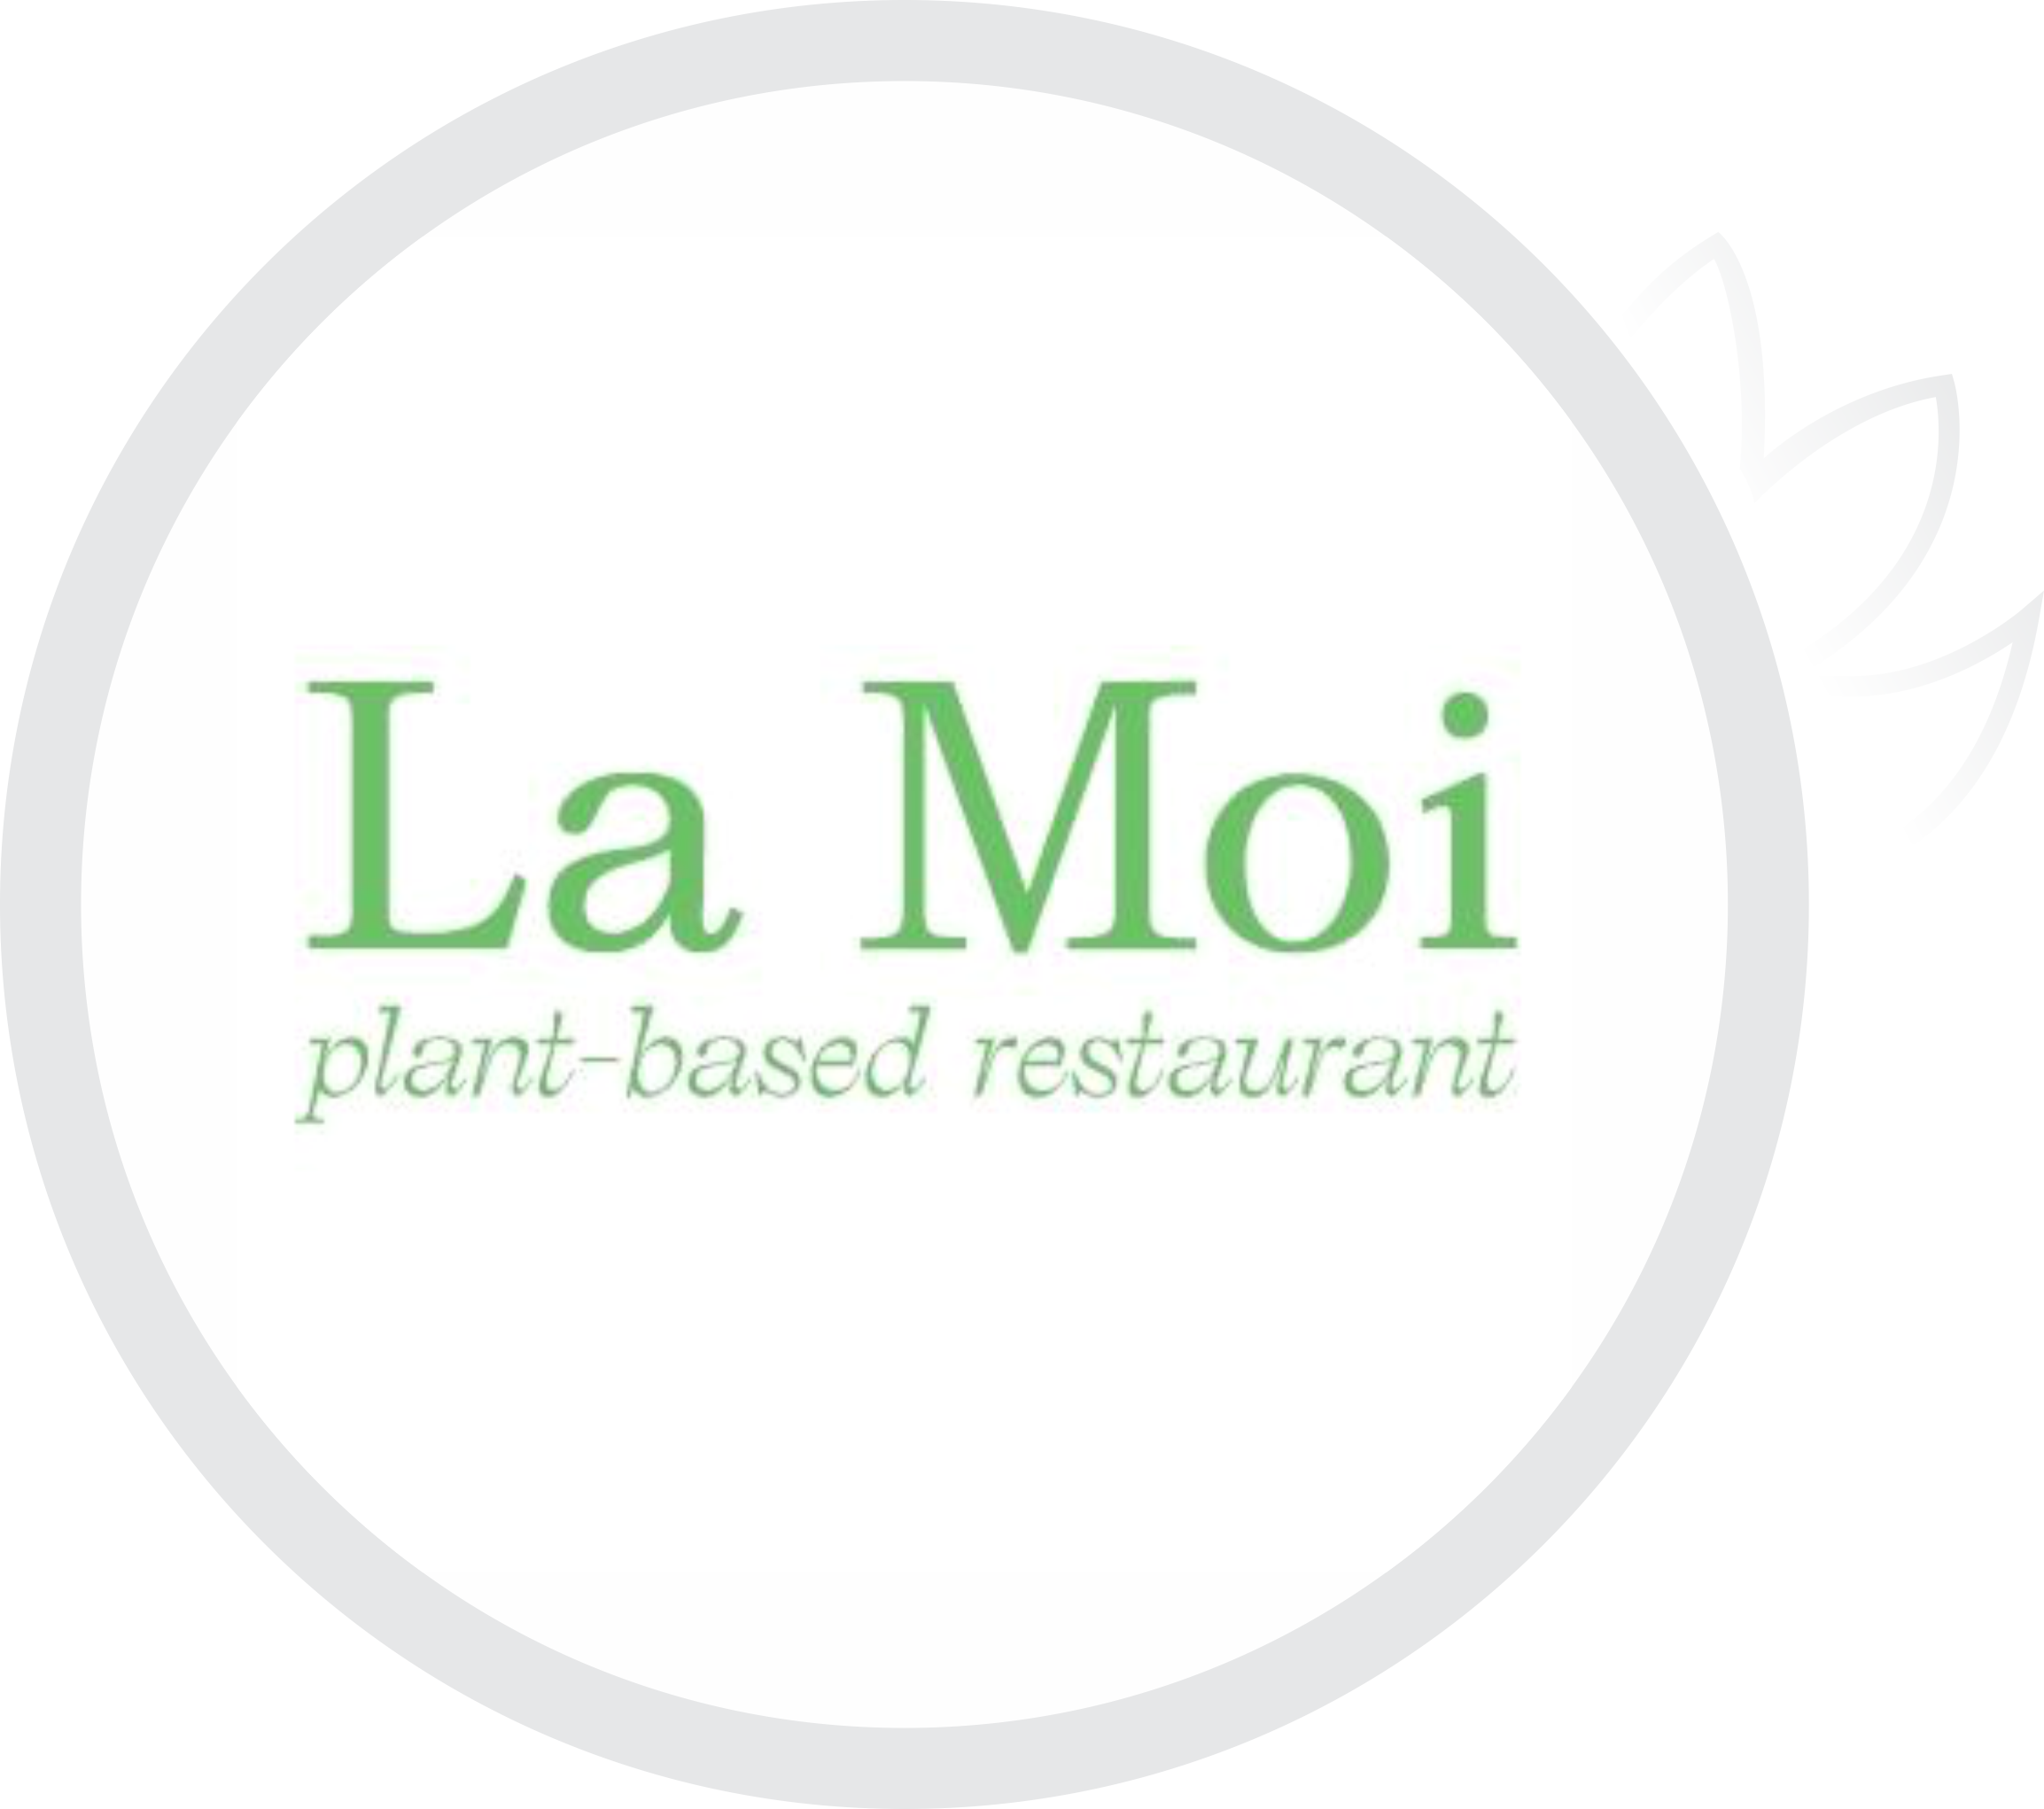 La Moi plan-based restaurant logo